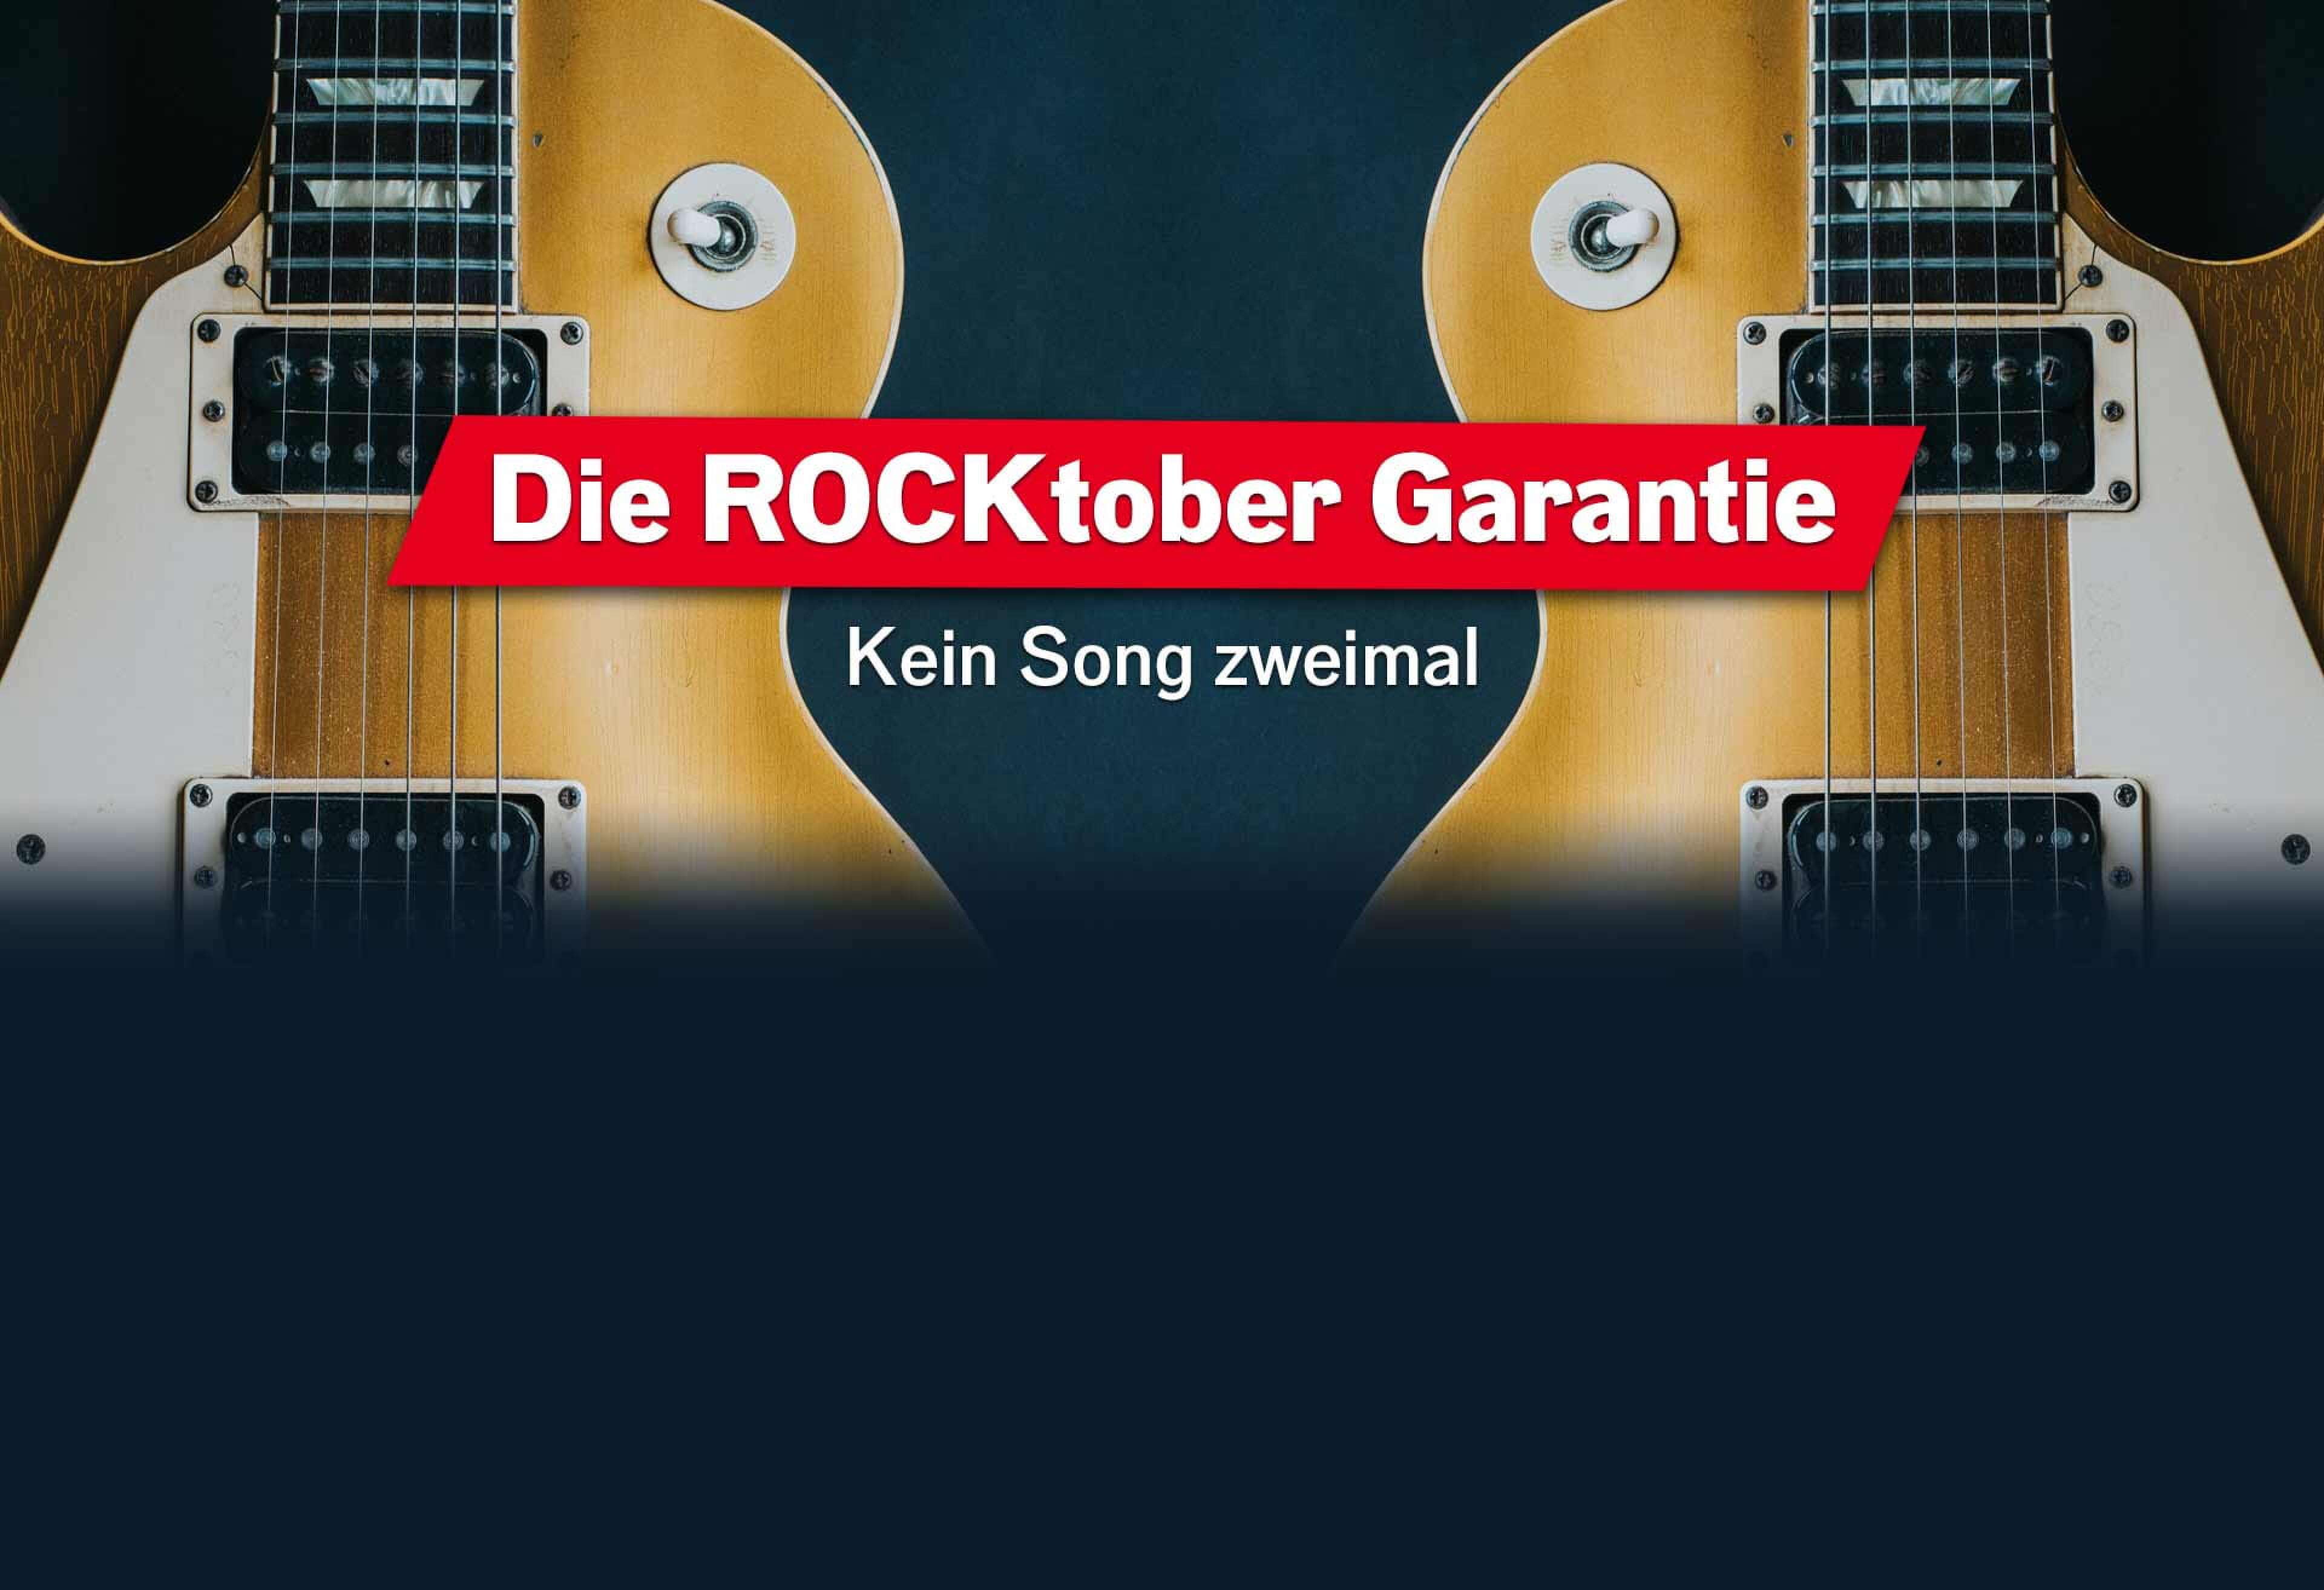 Bildausschnitt einer Gitarre mit Spiegelbild, Text "Die ROCKtober Garantie - kein Song zweimal"